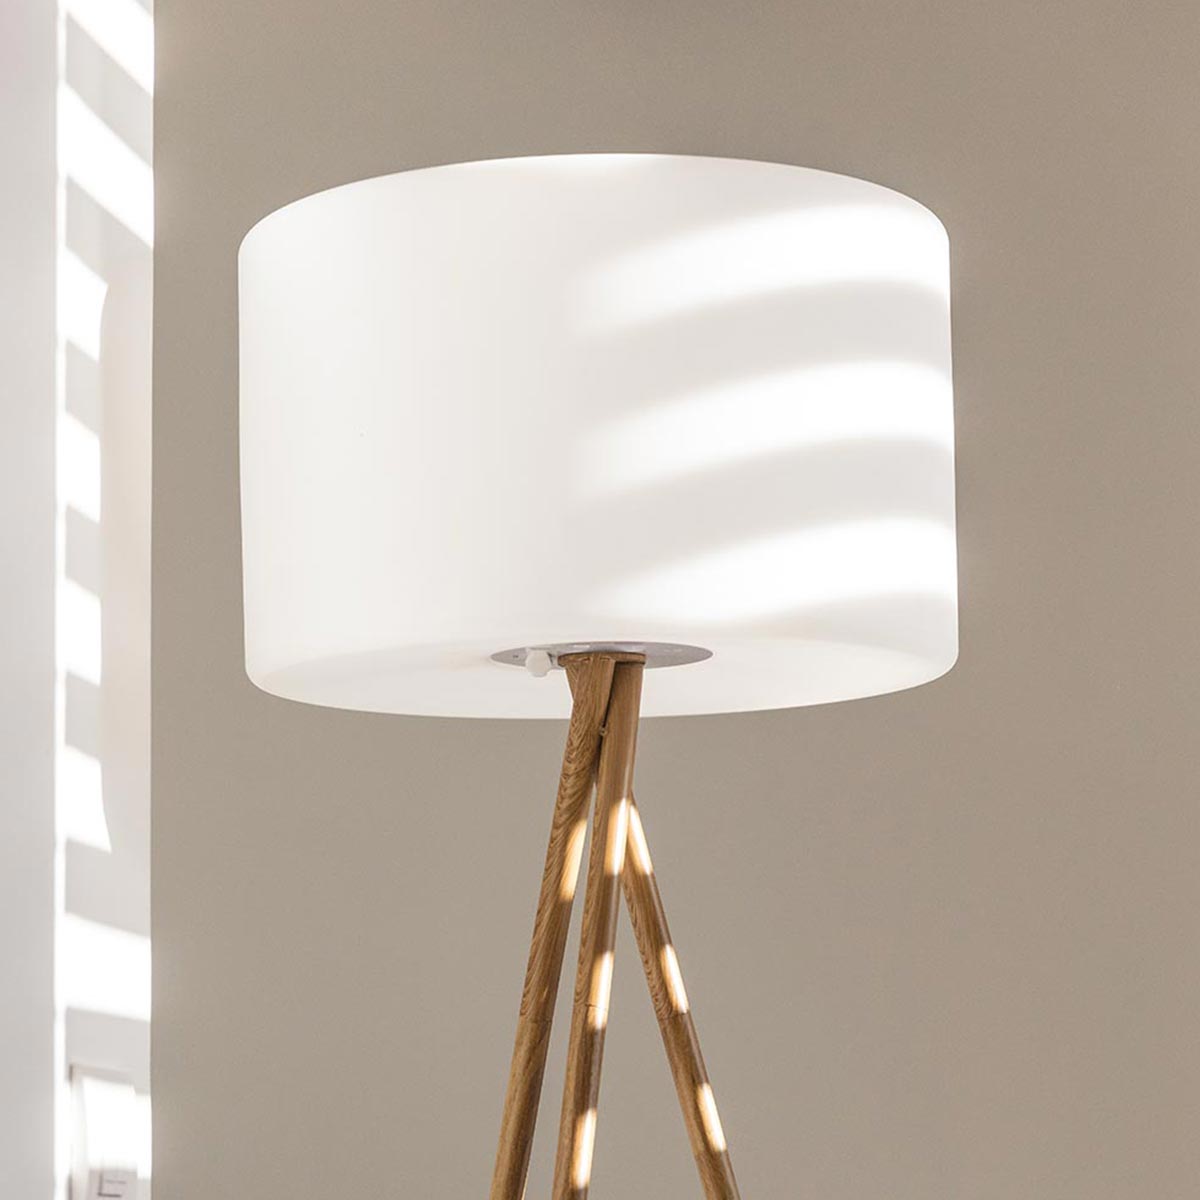 Lampadaire trépied sans fil design scandinave couleur bois extérieur LED blanc chaud/blanc dimmable TAMBOURY WOOD H155cm - REDDECO.com